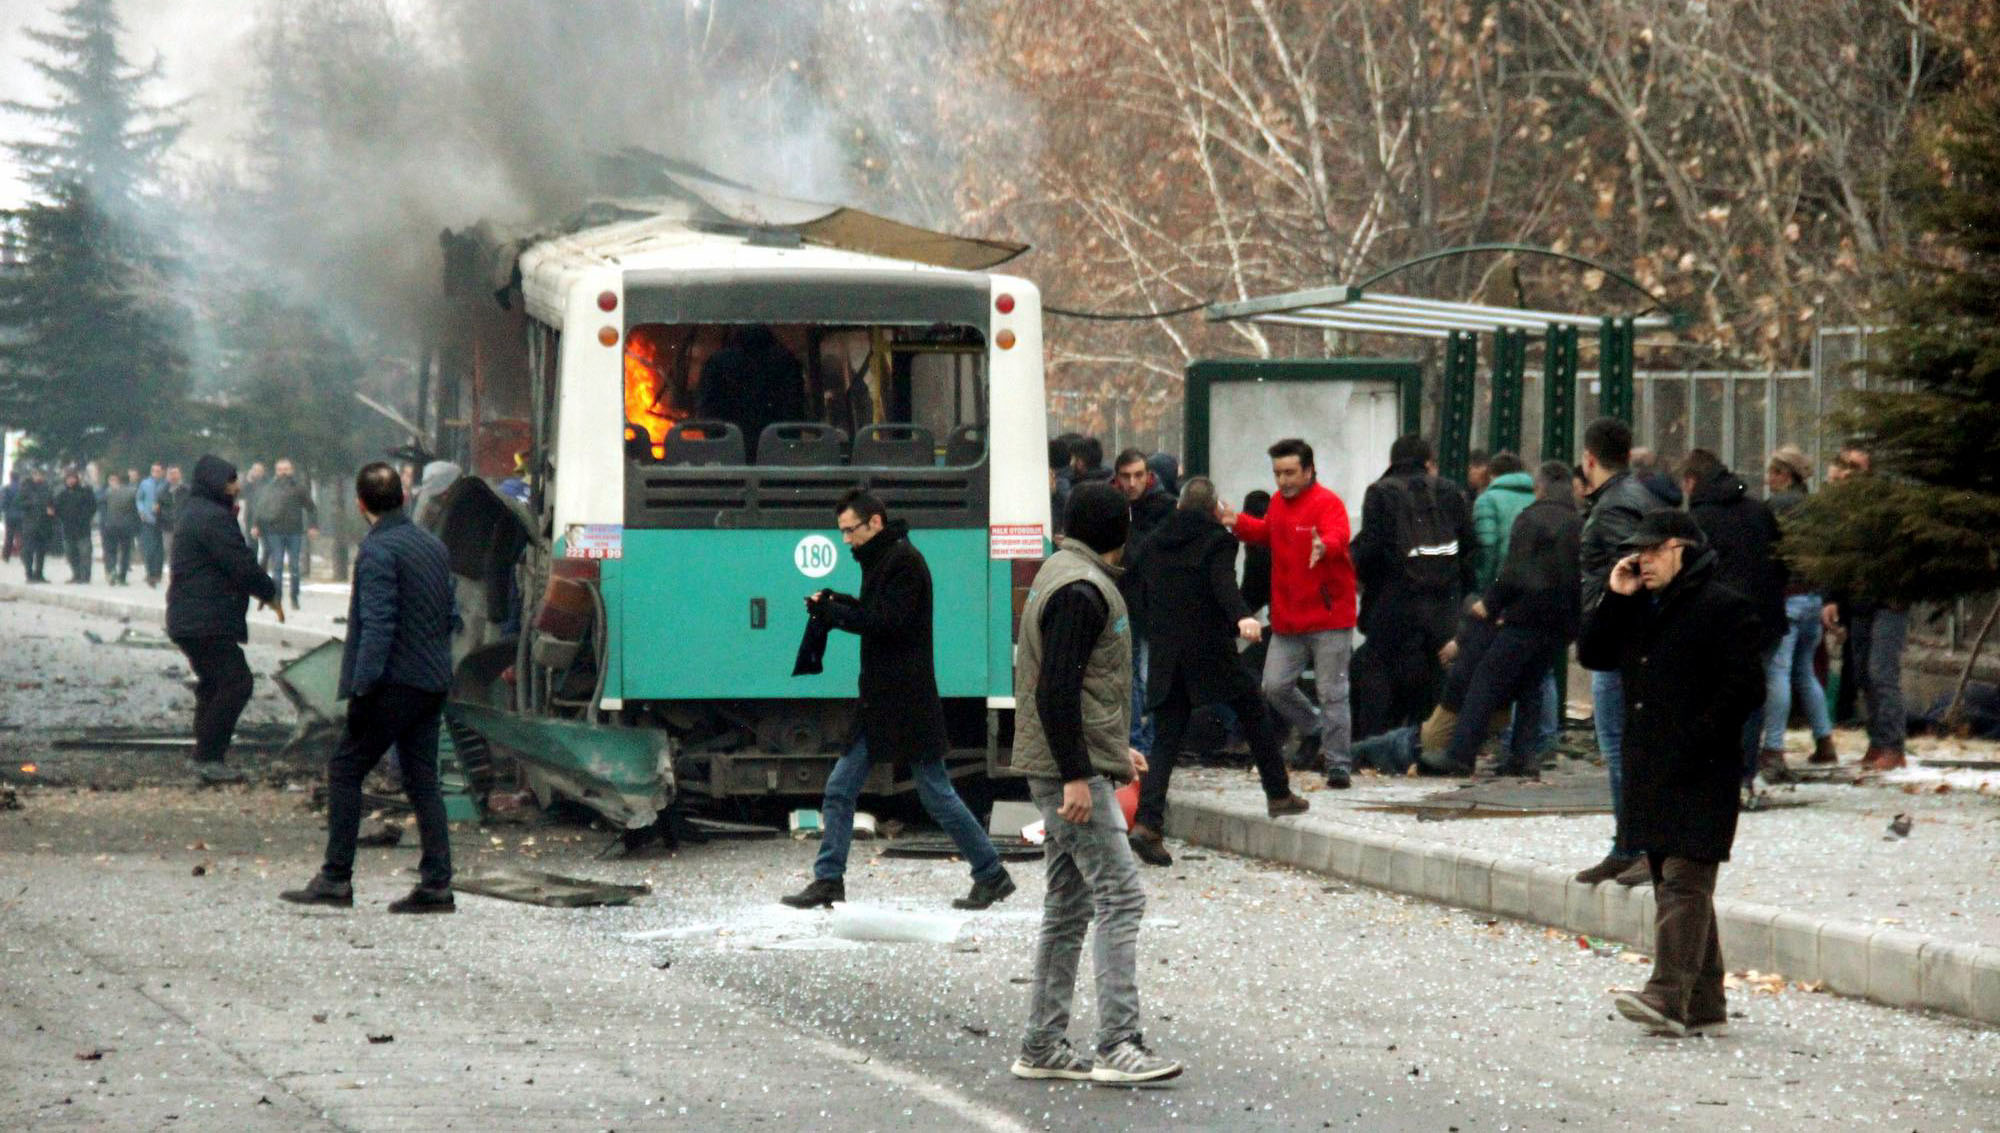 El ataque, por el que nadie se ha responsabilizado, fue contra un autobús.